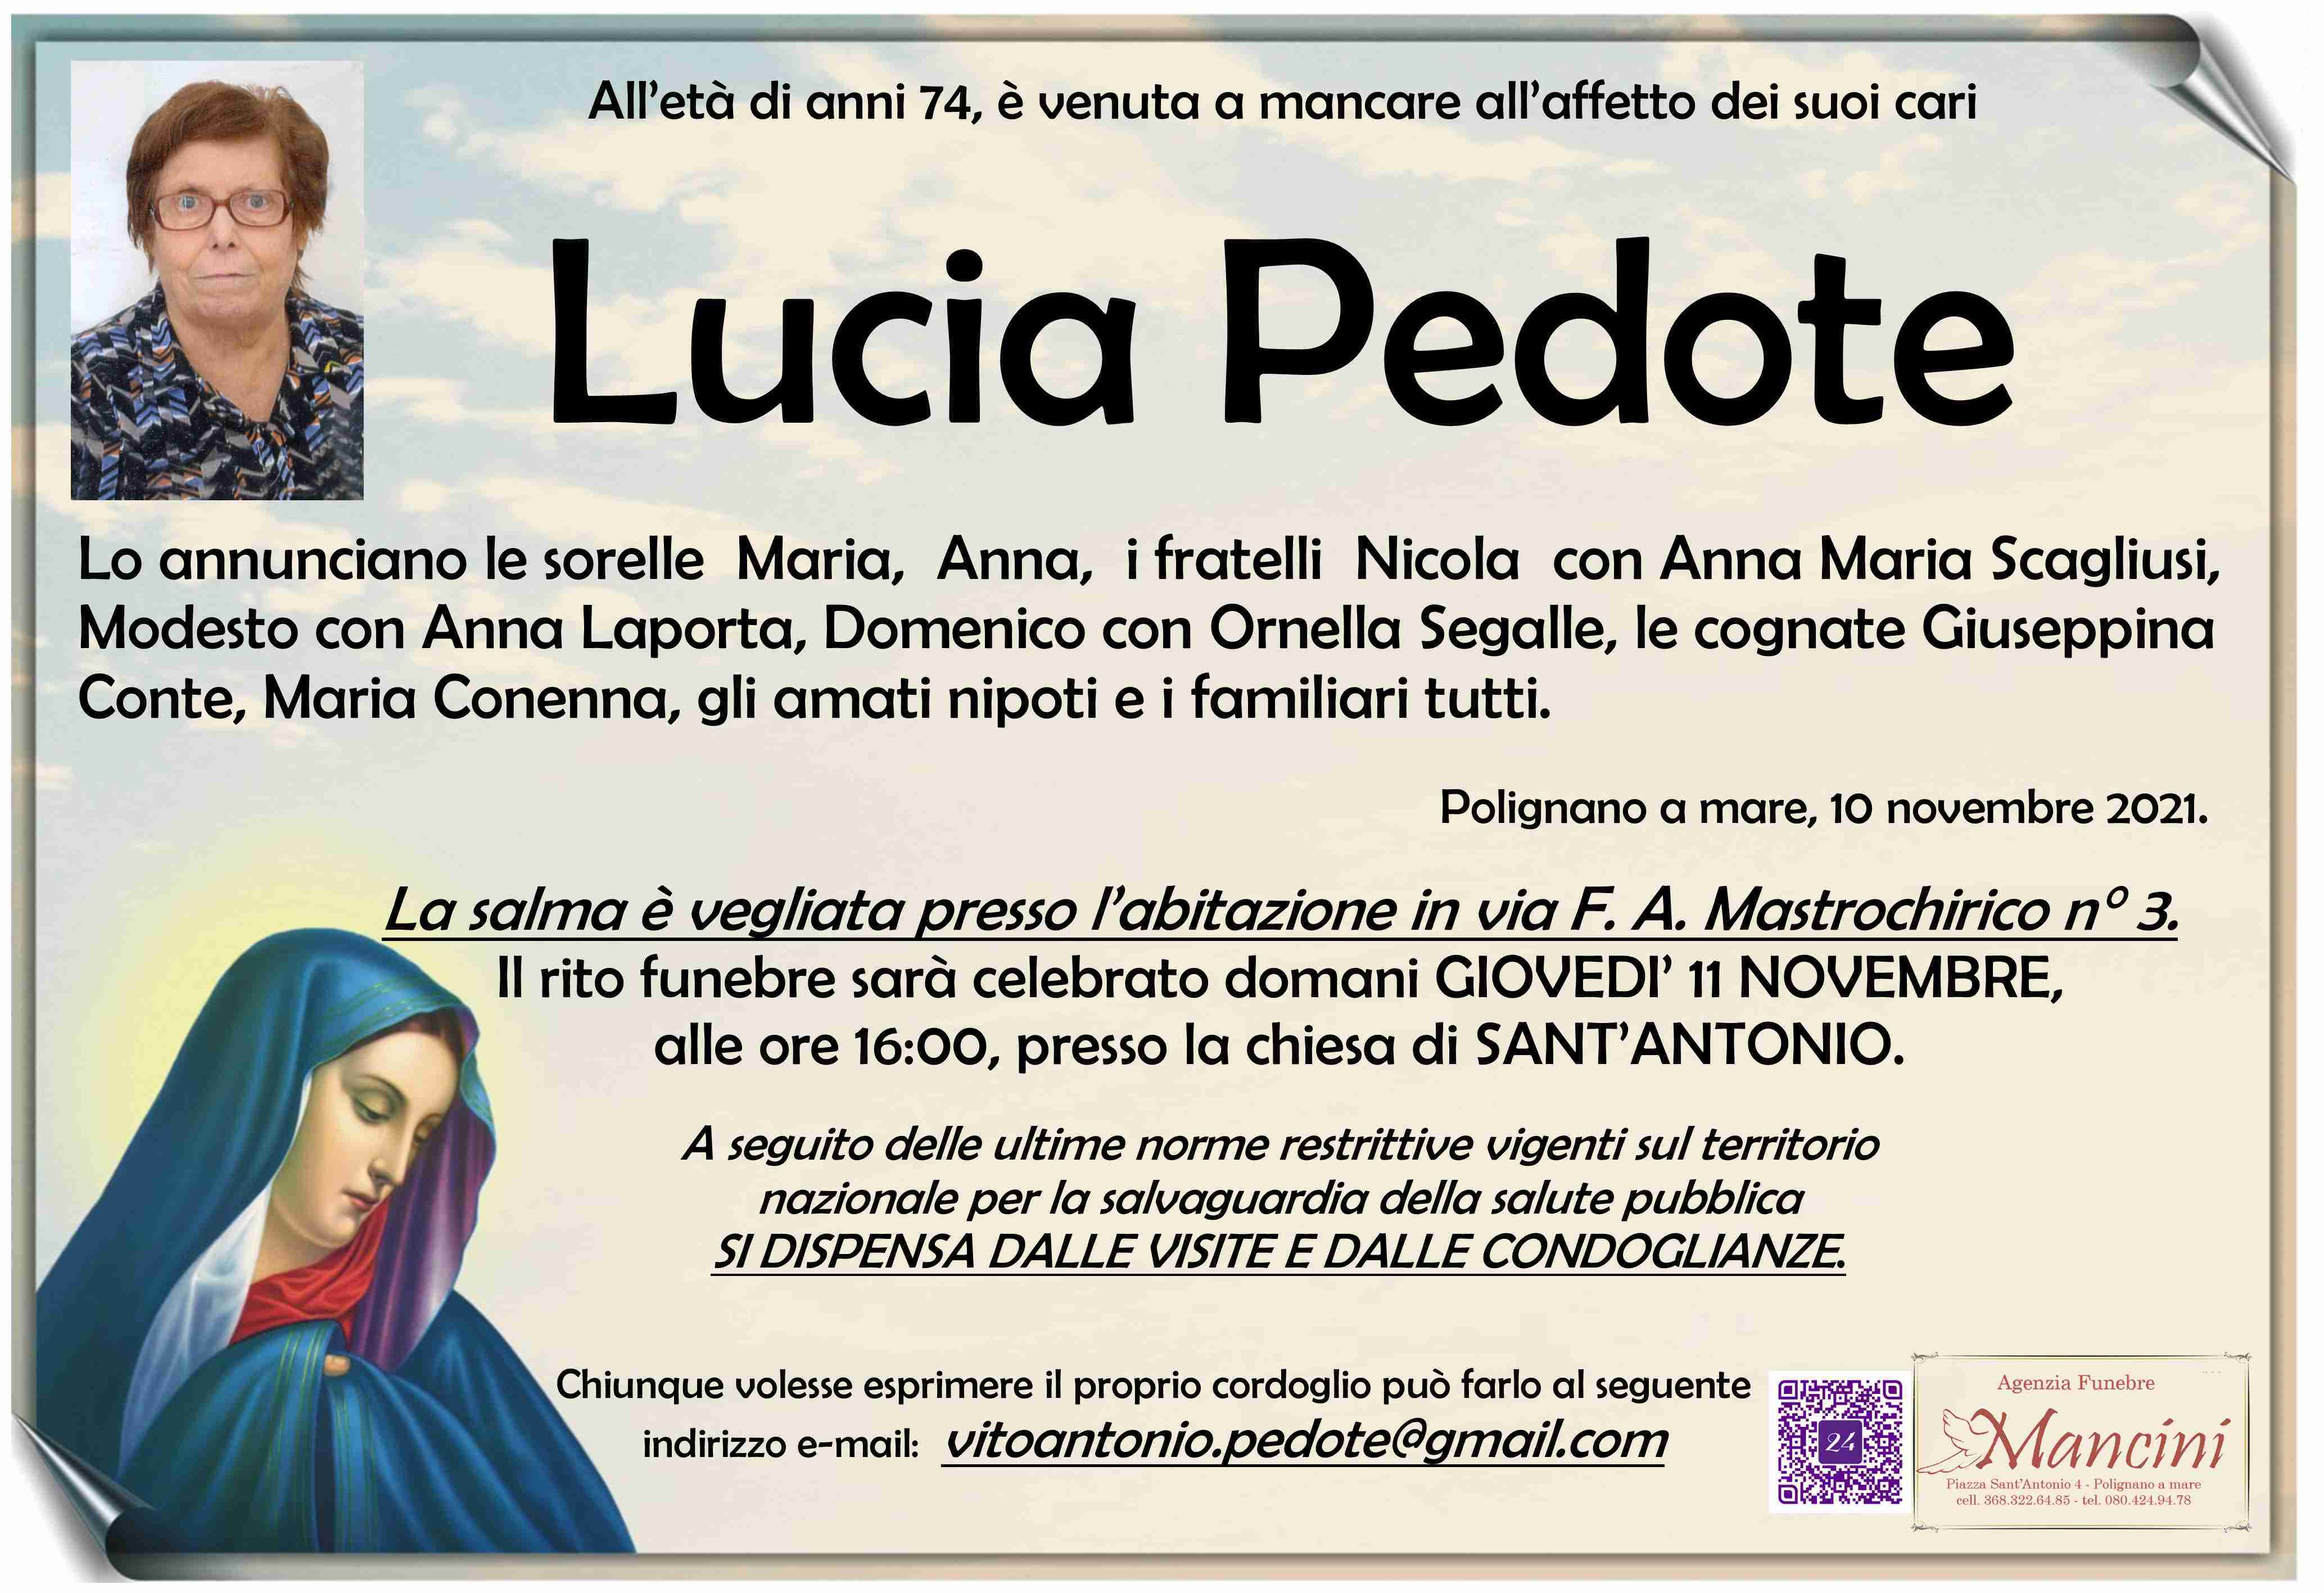 Lucia Pedote